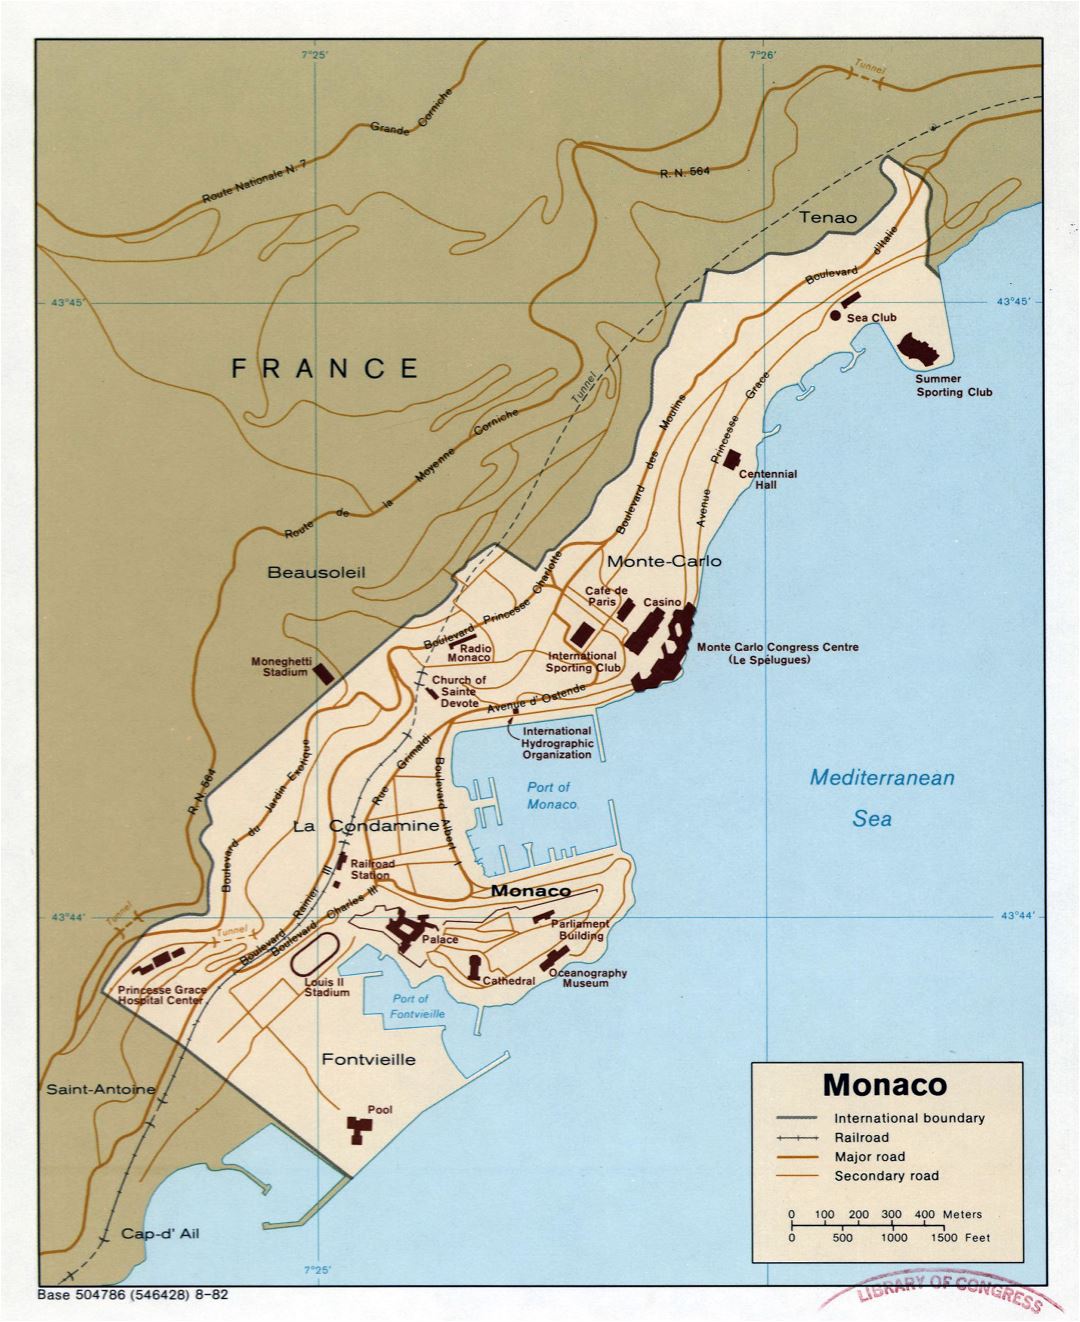 Grande detallado mapa política de Mónaco con carreteras y ferrocarriles - 1982